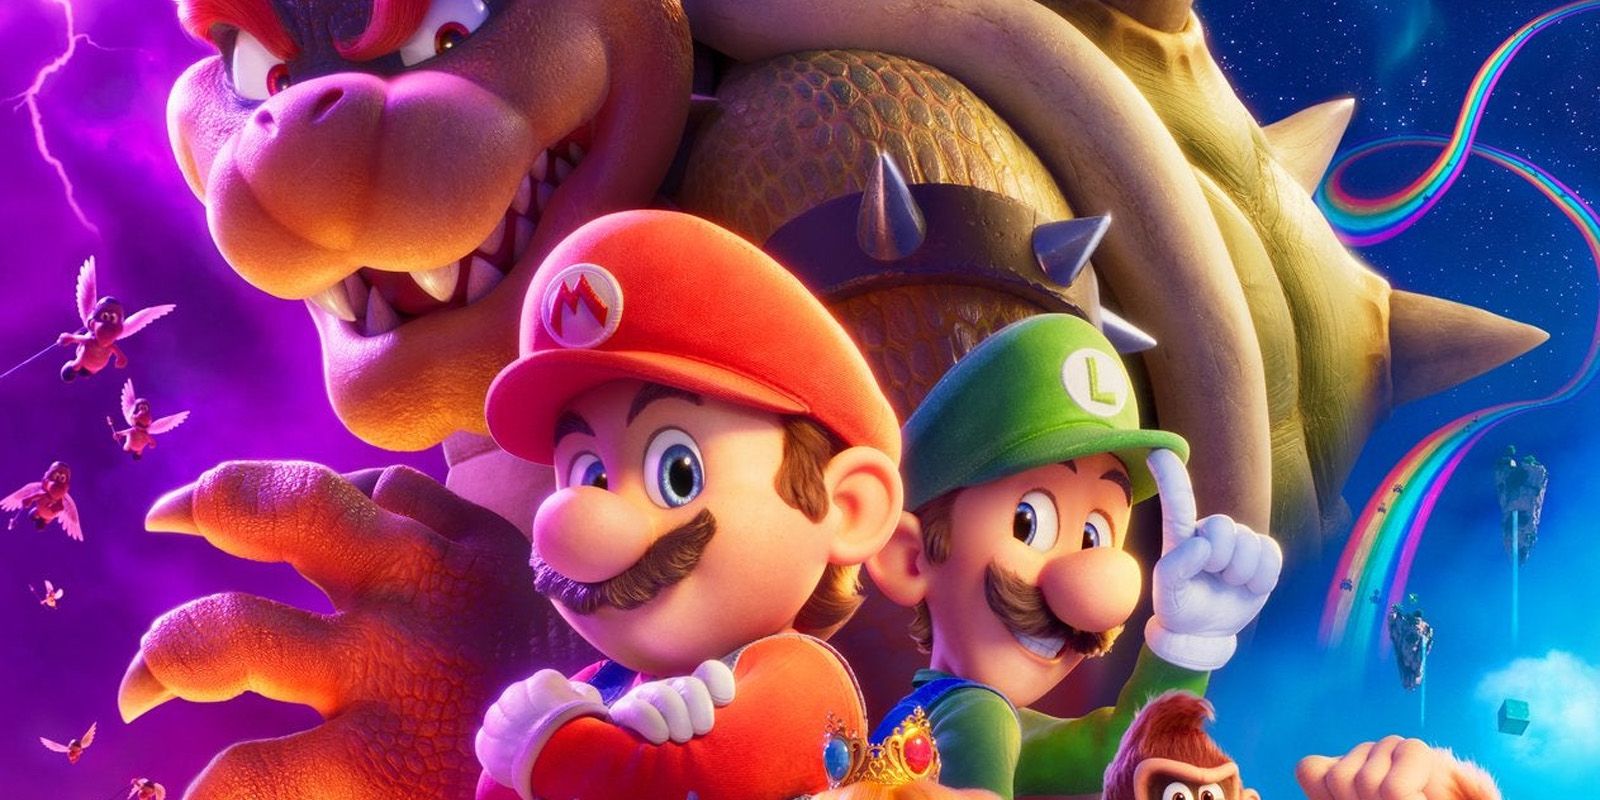 Phim Super Mario Bros. thiếu yếu tố lớn nhất của trò chơi